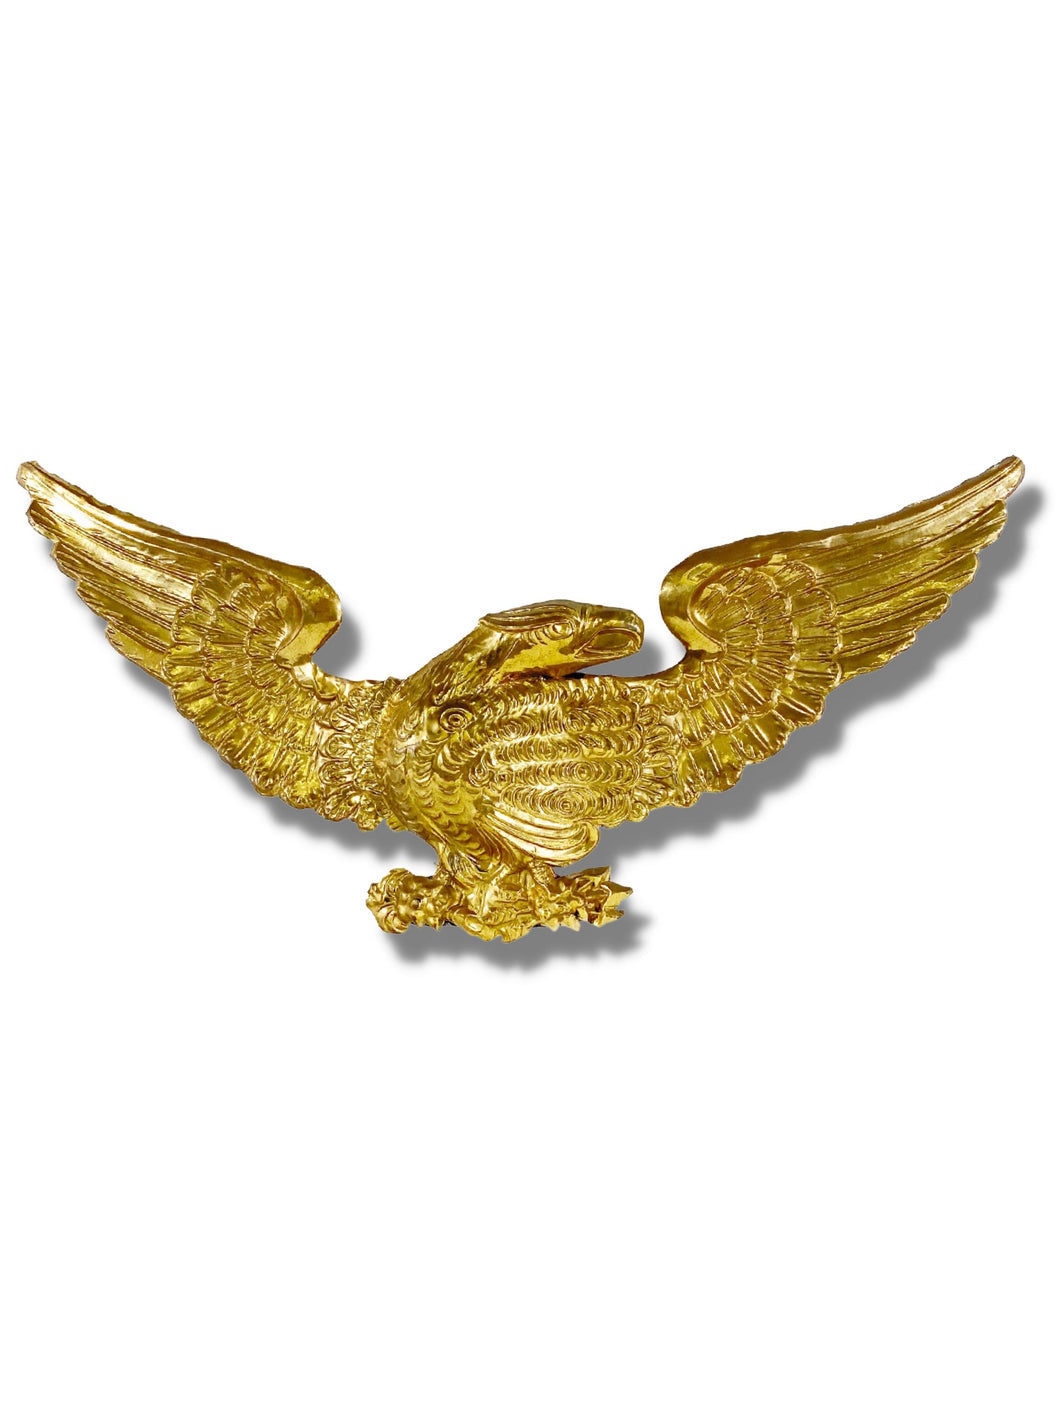 Antique Repousse Eagle